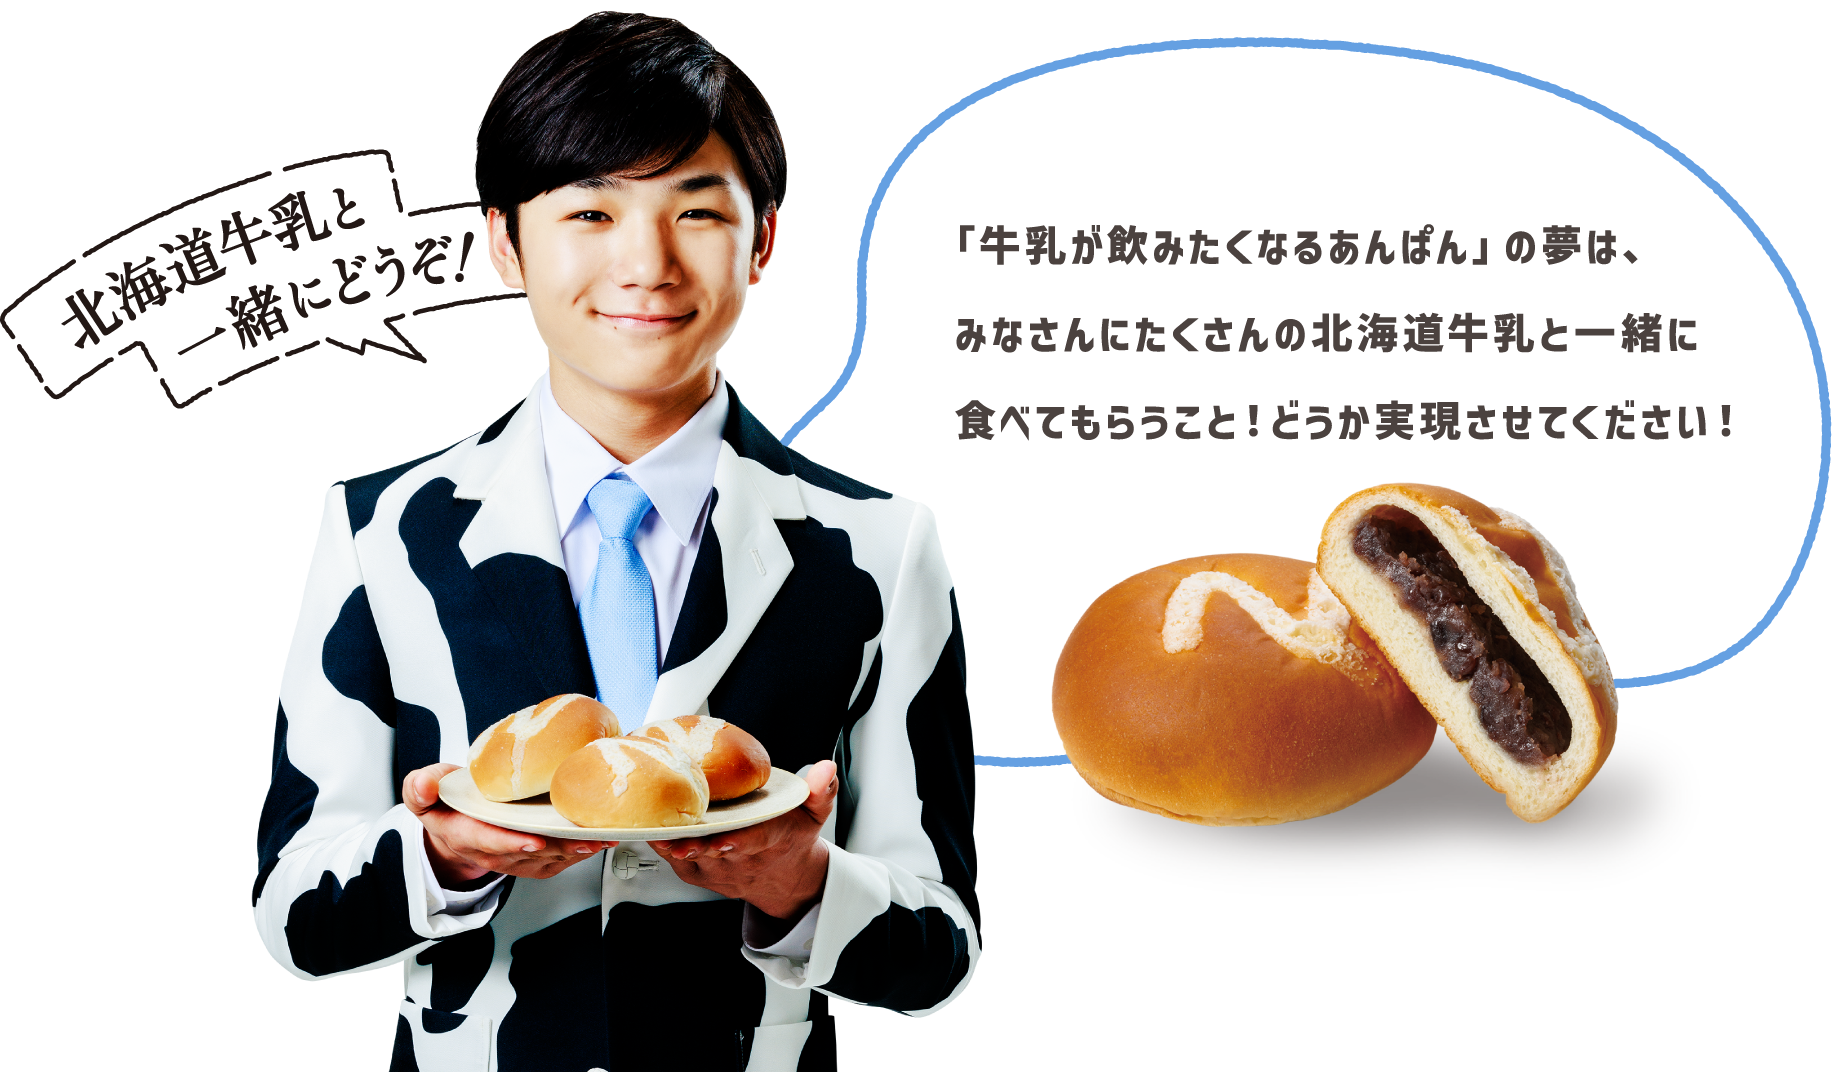 「牛乳が飲みたくなるあんぱん」の夢は、みなさんにたくさんの北海道牛乳と一緒に食べてもらうこと！どうか実現させてください！